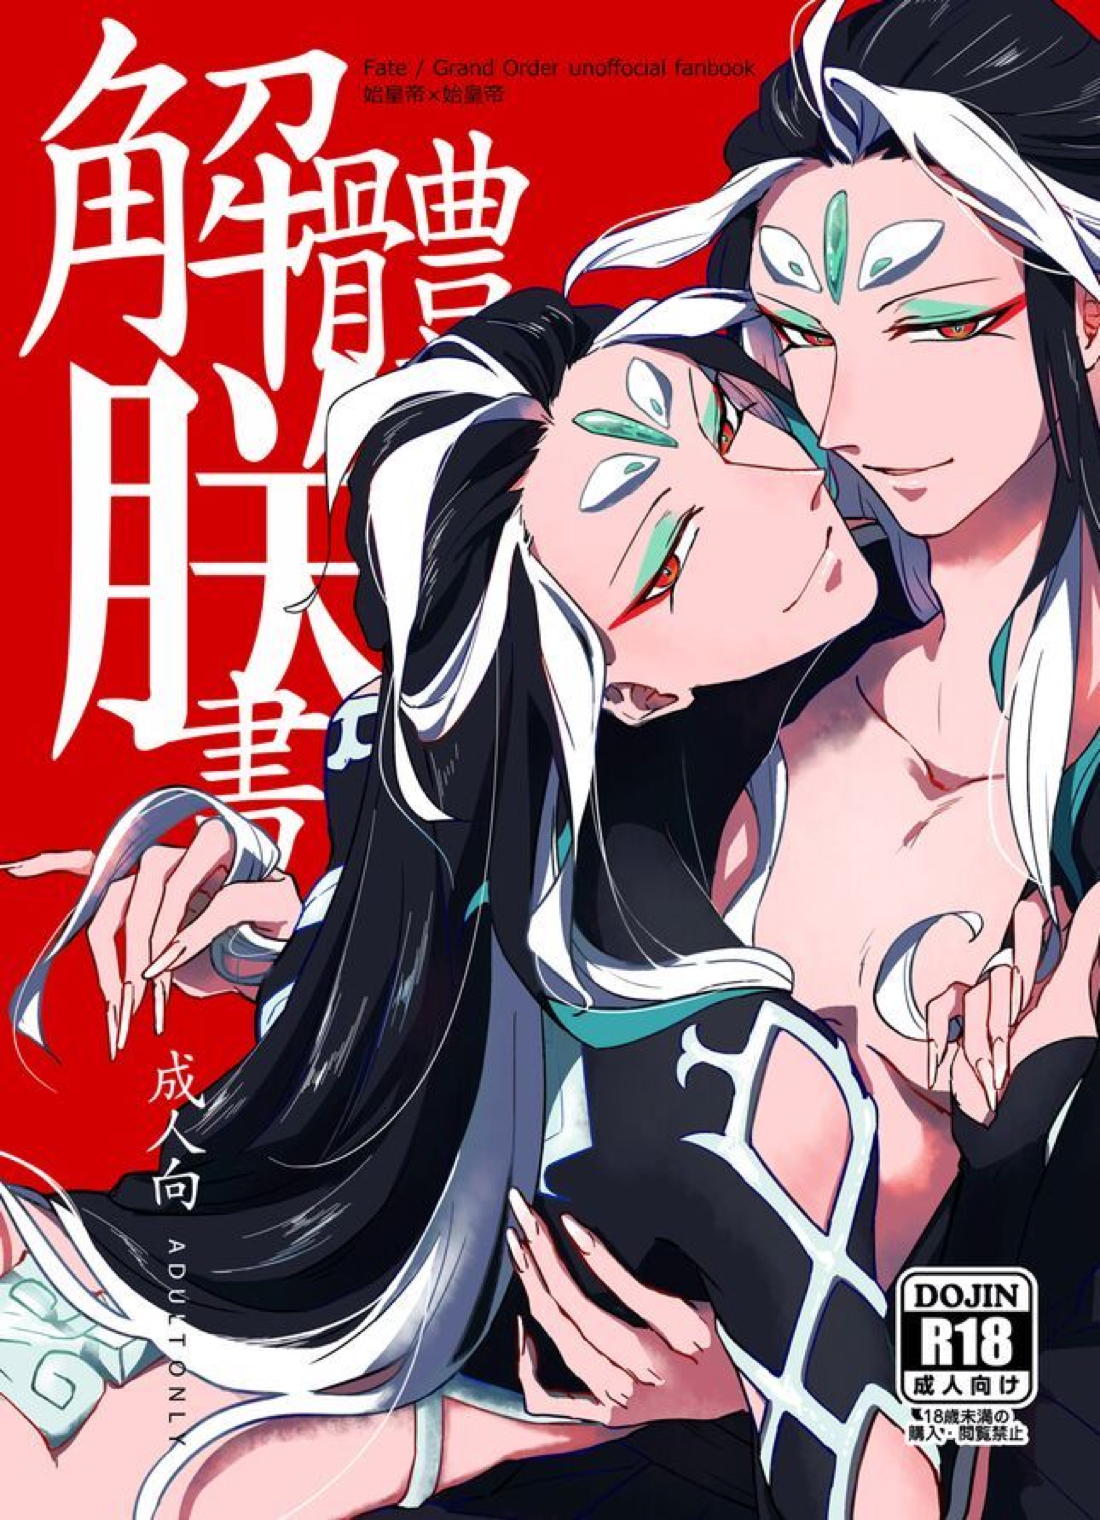 【BL漫画 Fate/Grand Order】男性体と無性体の始皇帝が同期するために媚薬を口にしながら肌を重ねるイチャイチャボーイズラブエッチ1